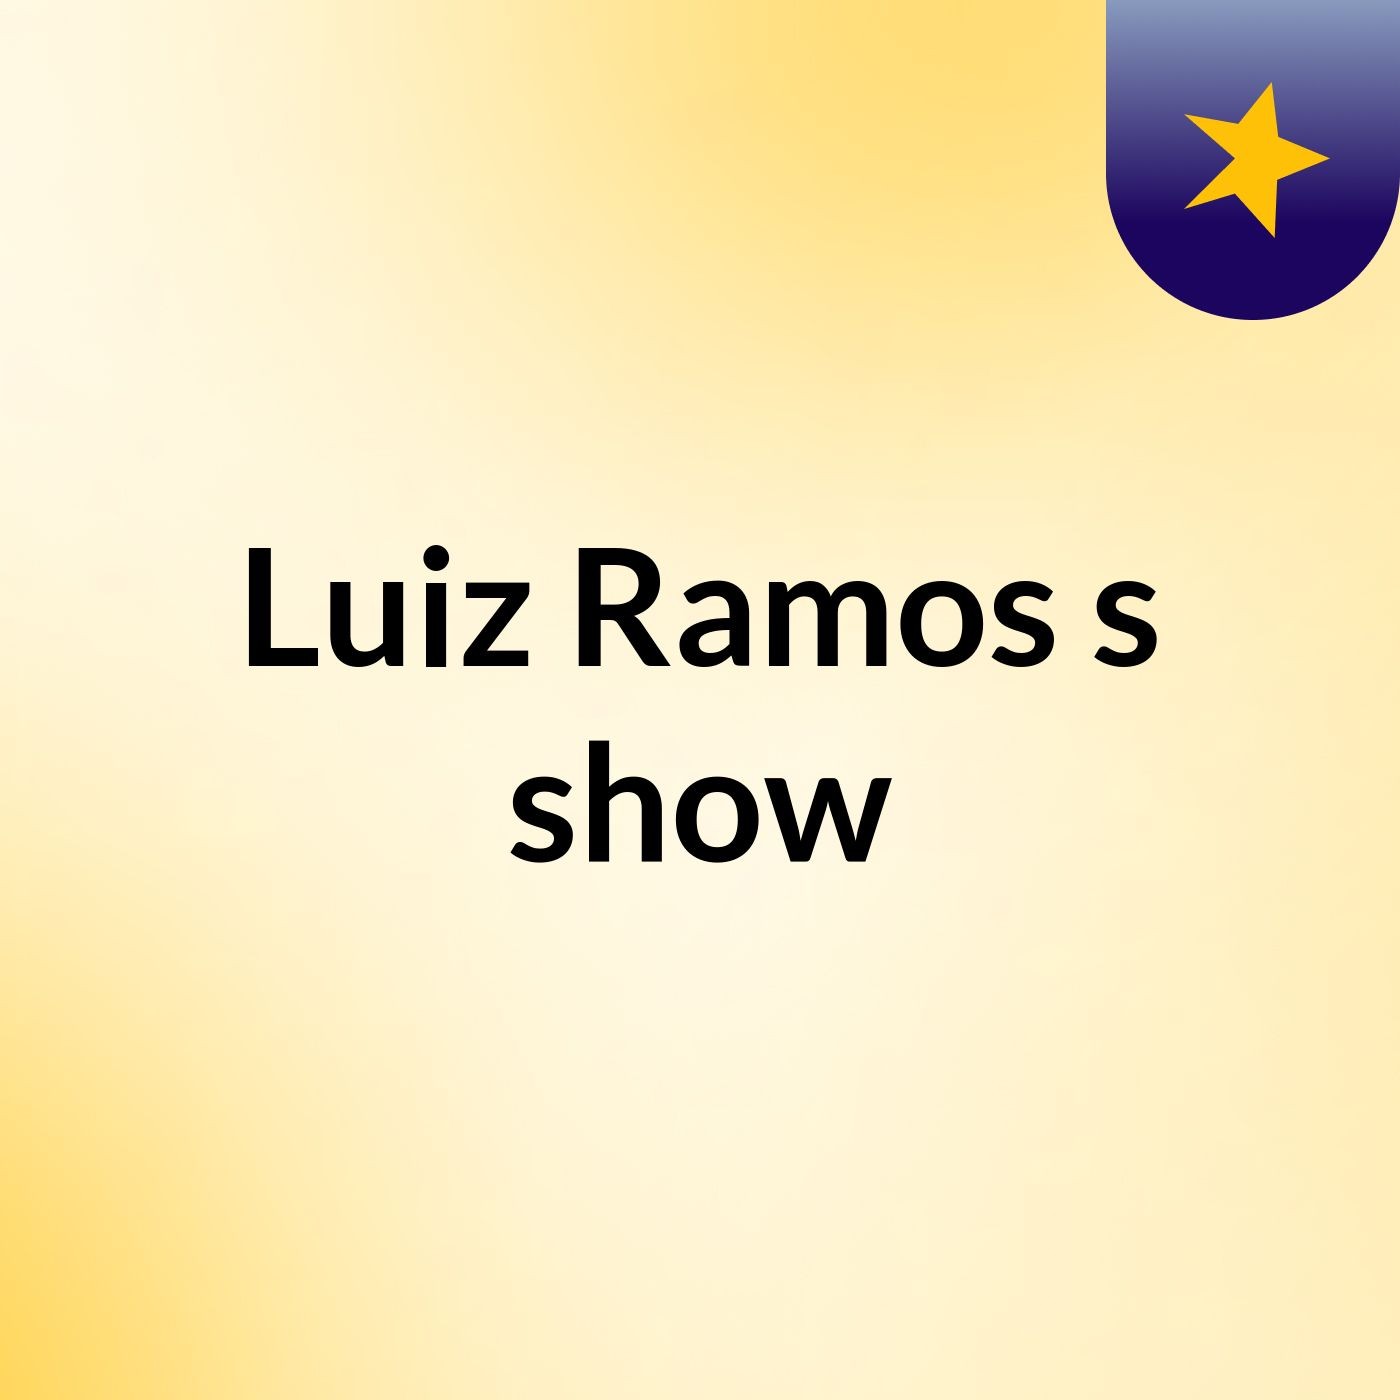 Luiz Ramos's show